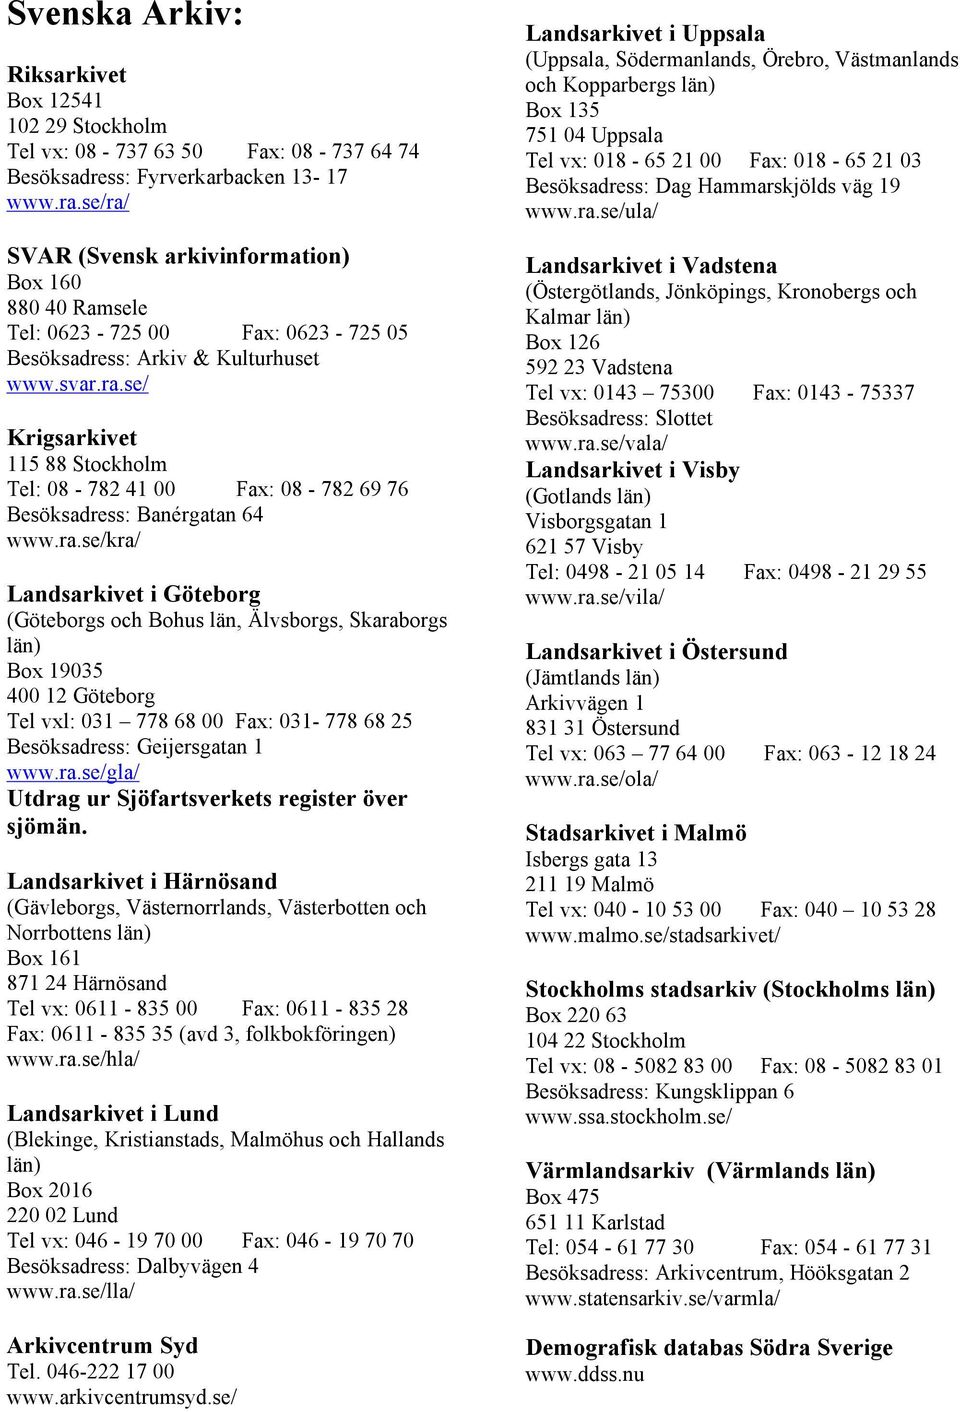 ra.se/kra/ (Göteborgs och Bohus län, Älvsborgs, Skaraborgs län) Box 19035 400 12 Göteborg Tel vxl: 031 778 68 00 Fax: 031-778 68 25 Besöksadress: Geijersgatan 1 www.ra.se/gla/ Utdrag ur Sjöfartsverkets register över sjömän.